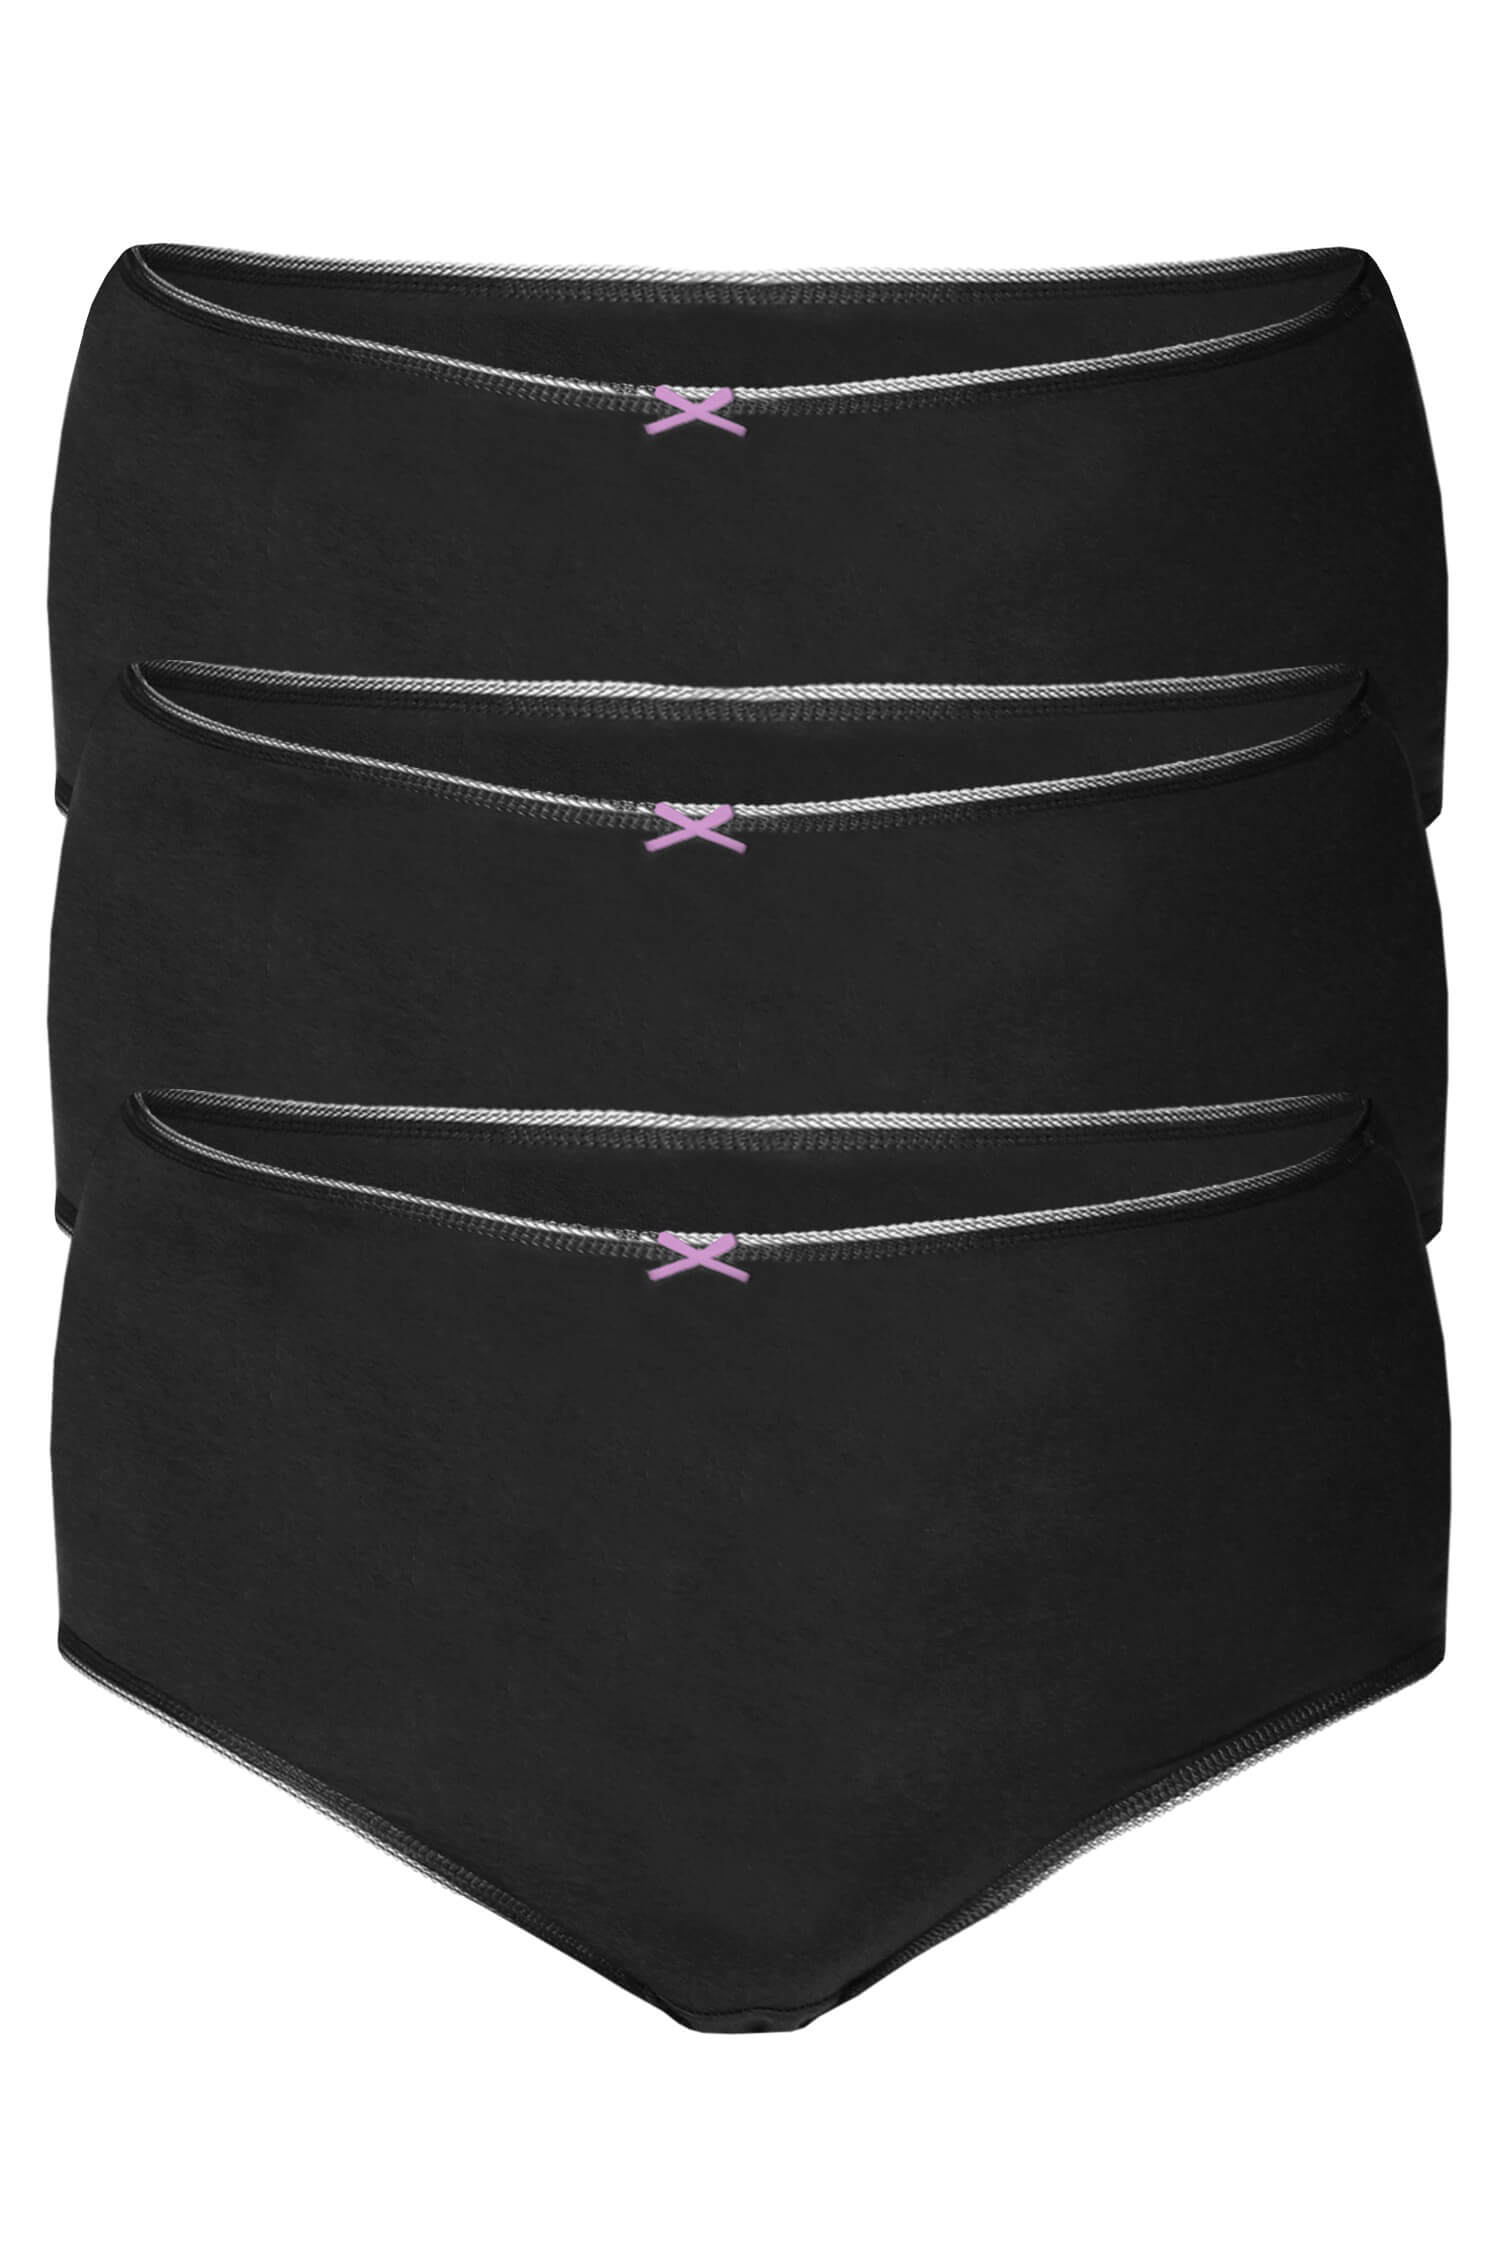 Evička maxi bavlněné kalhotky 3ks 7XL černá